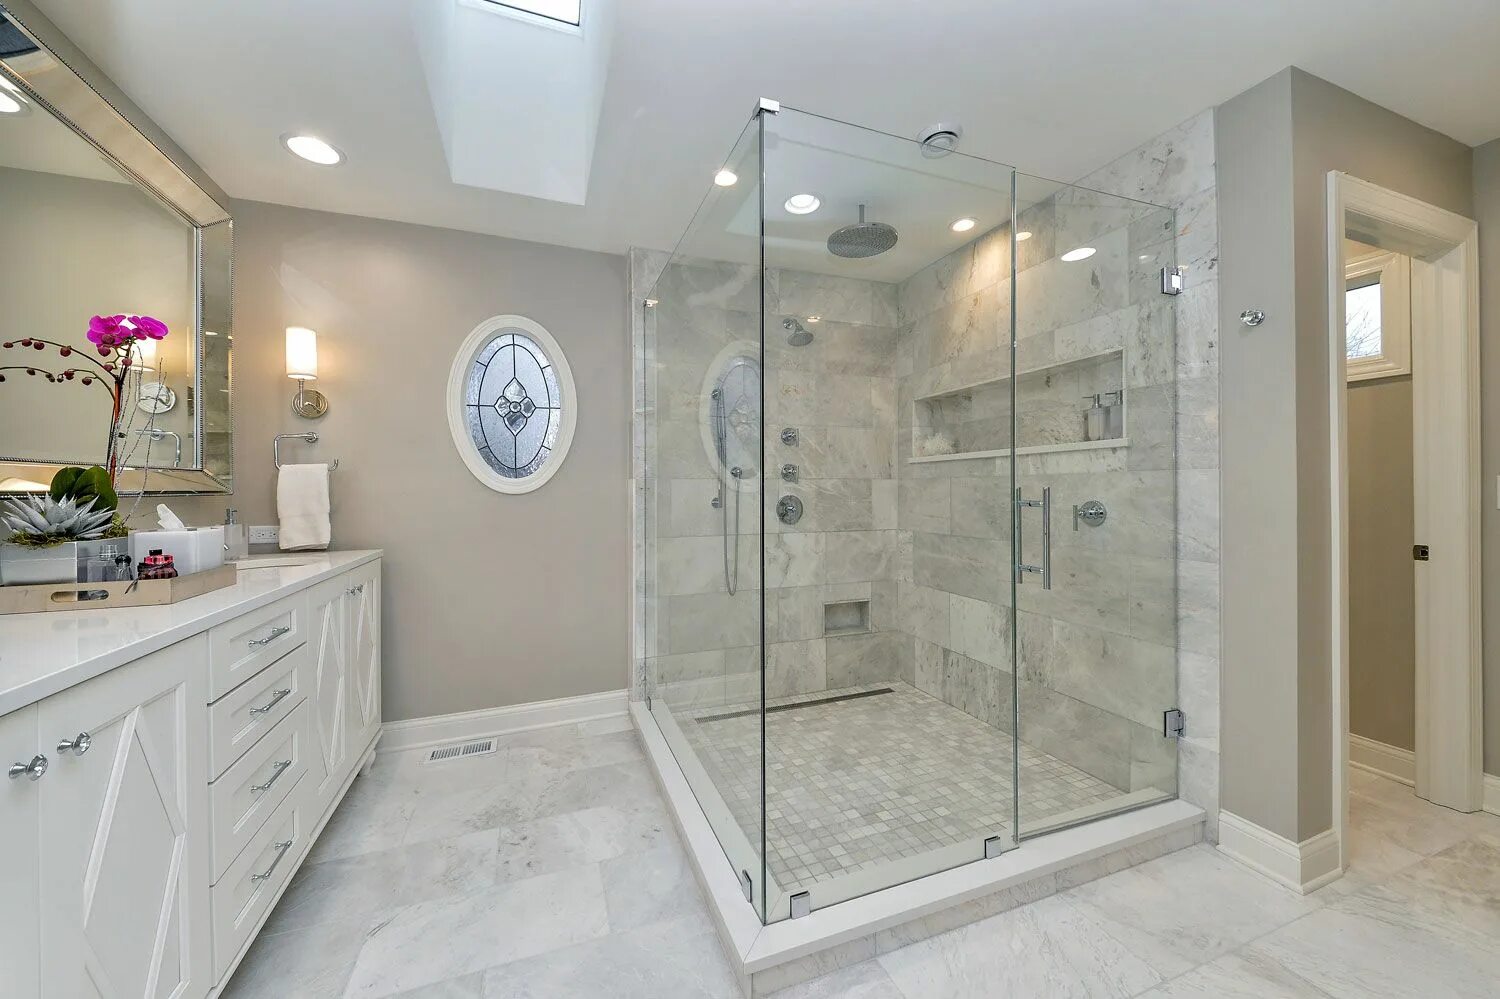 Установка стеклянной душевой. Душевая кабина модель Full Glass Shower Room ks0909 стекло 6мм. Ванная комната со стеклянной перегородкой. Интерьер ванной комнаты с душевой перегородкой стеклянной. Ванна со стеклянной перегородкой.